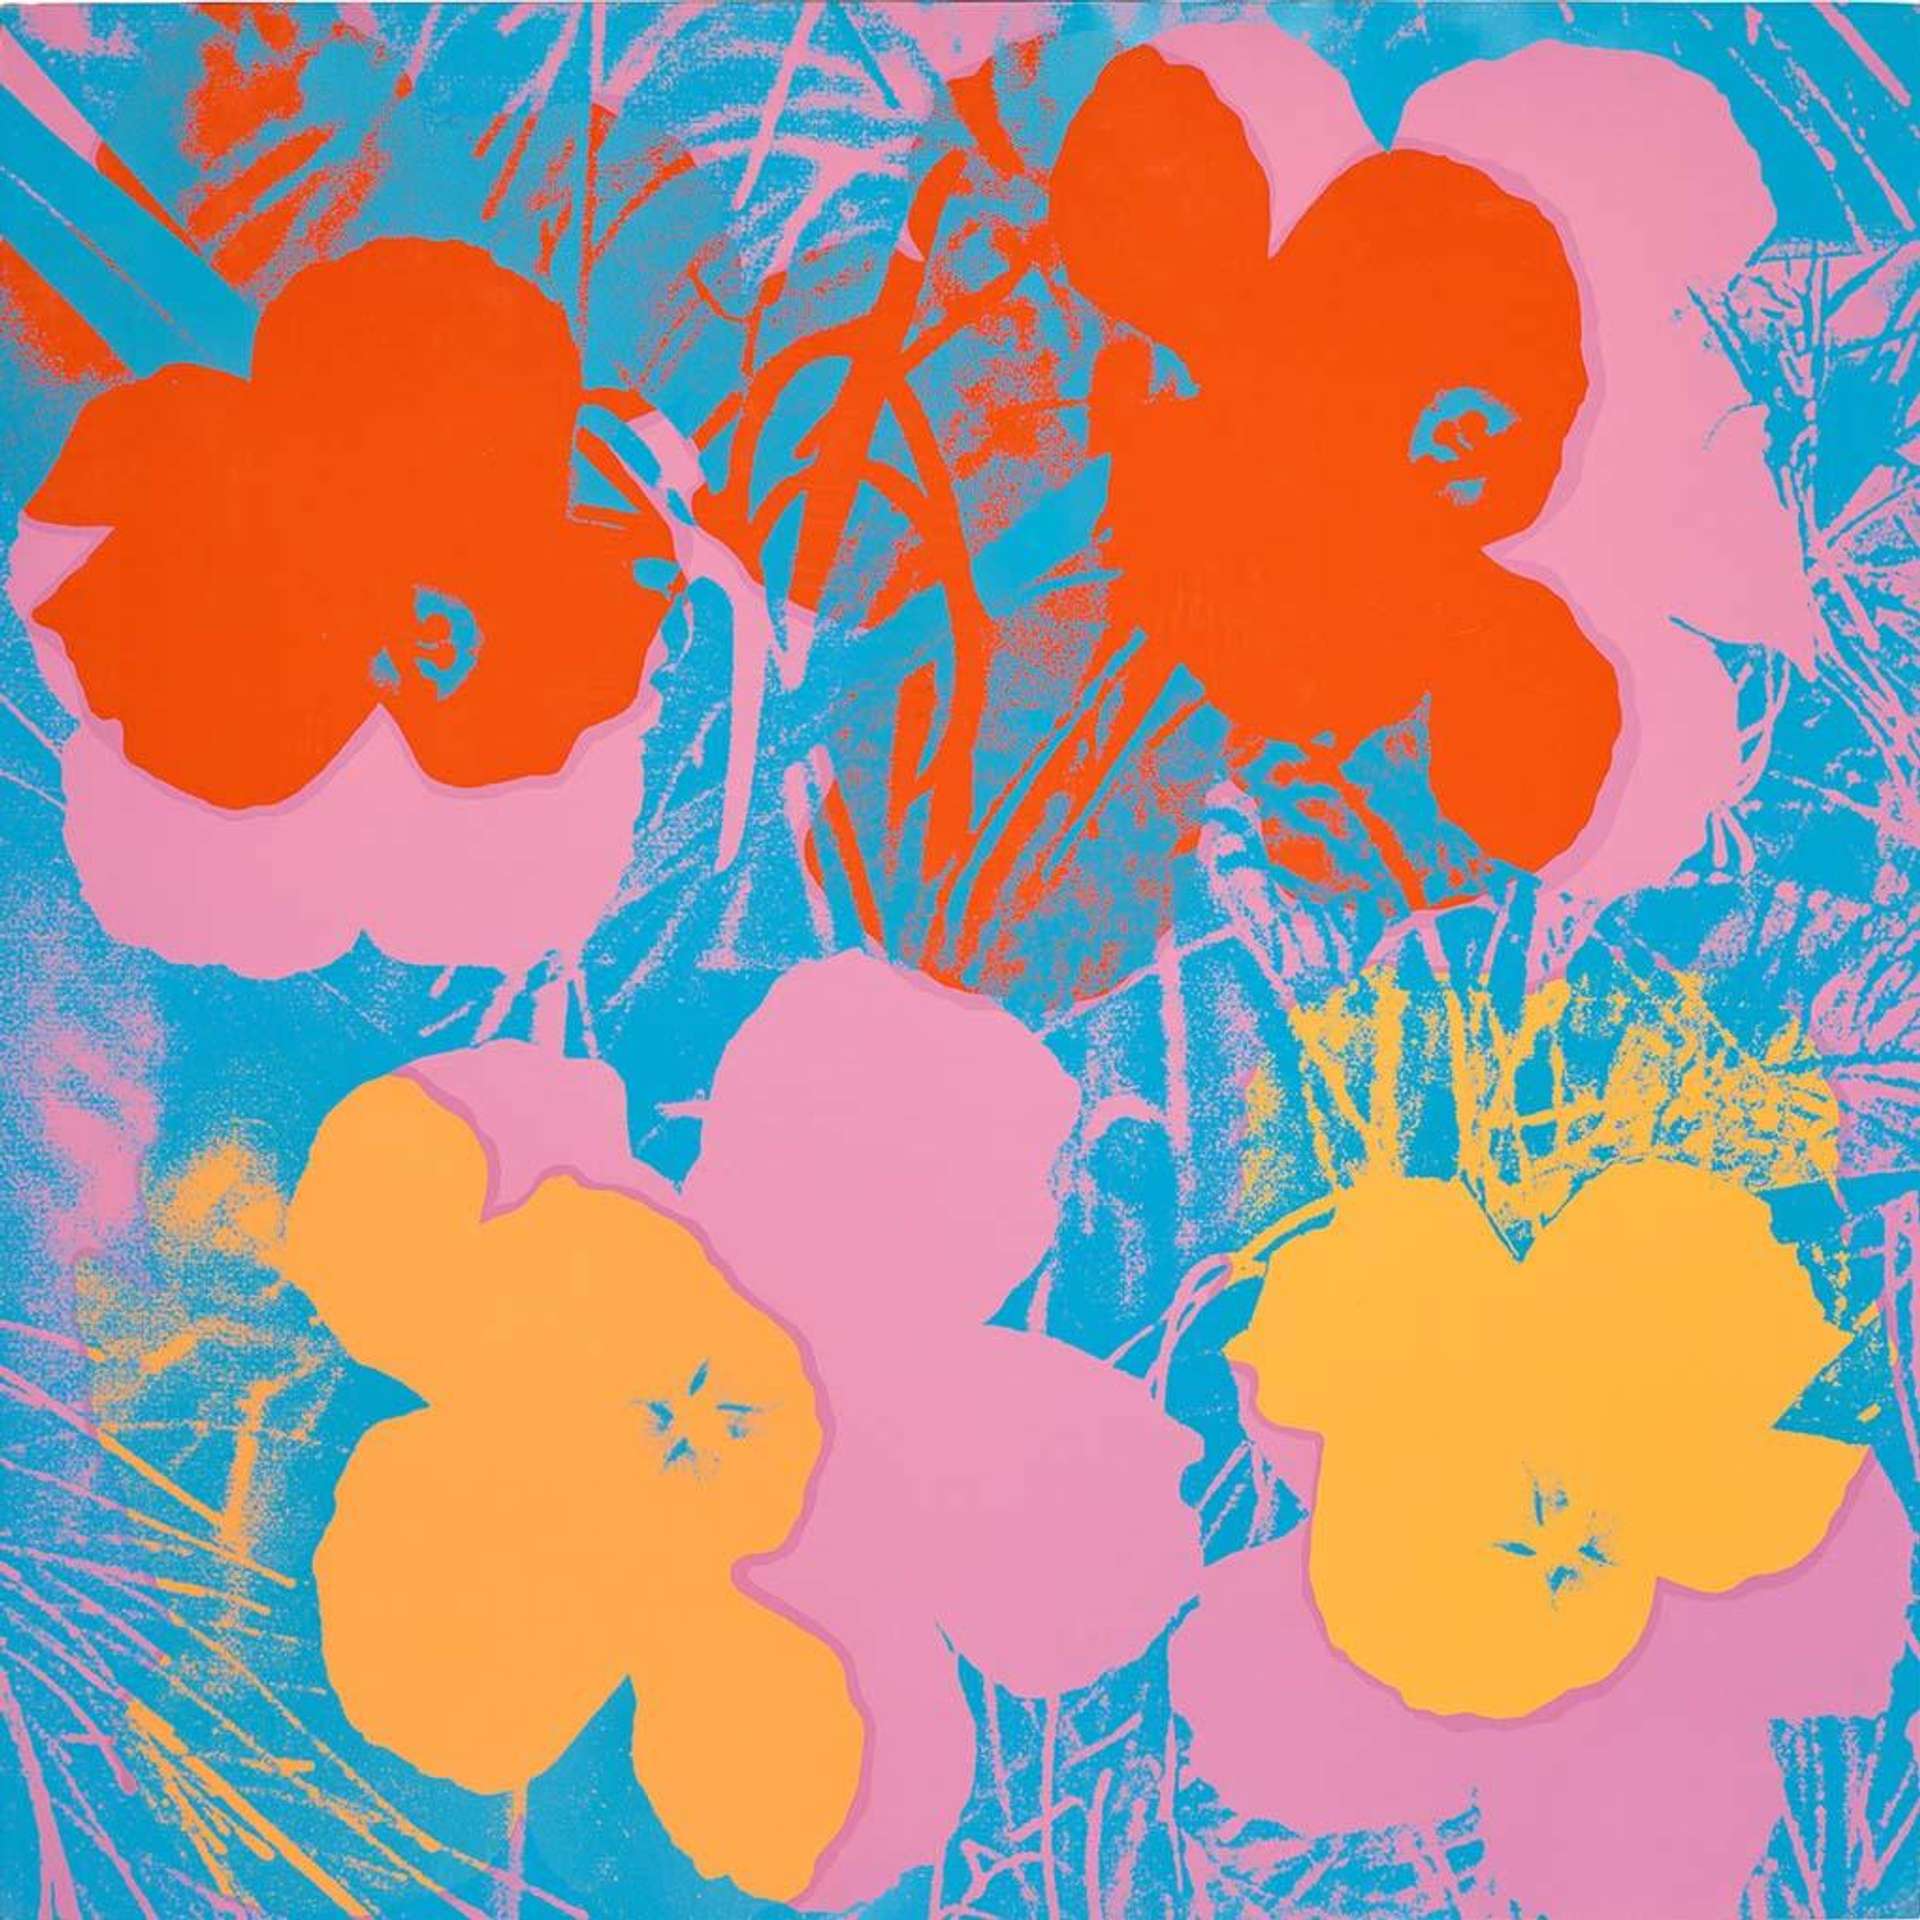 Flowers (F. & S. II.66) by Andy Warhol - MyArtBroker